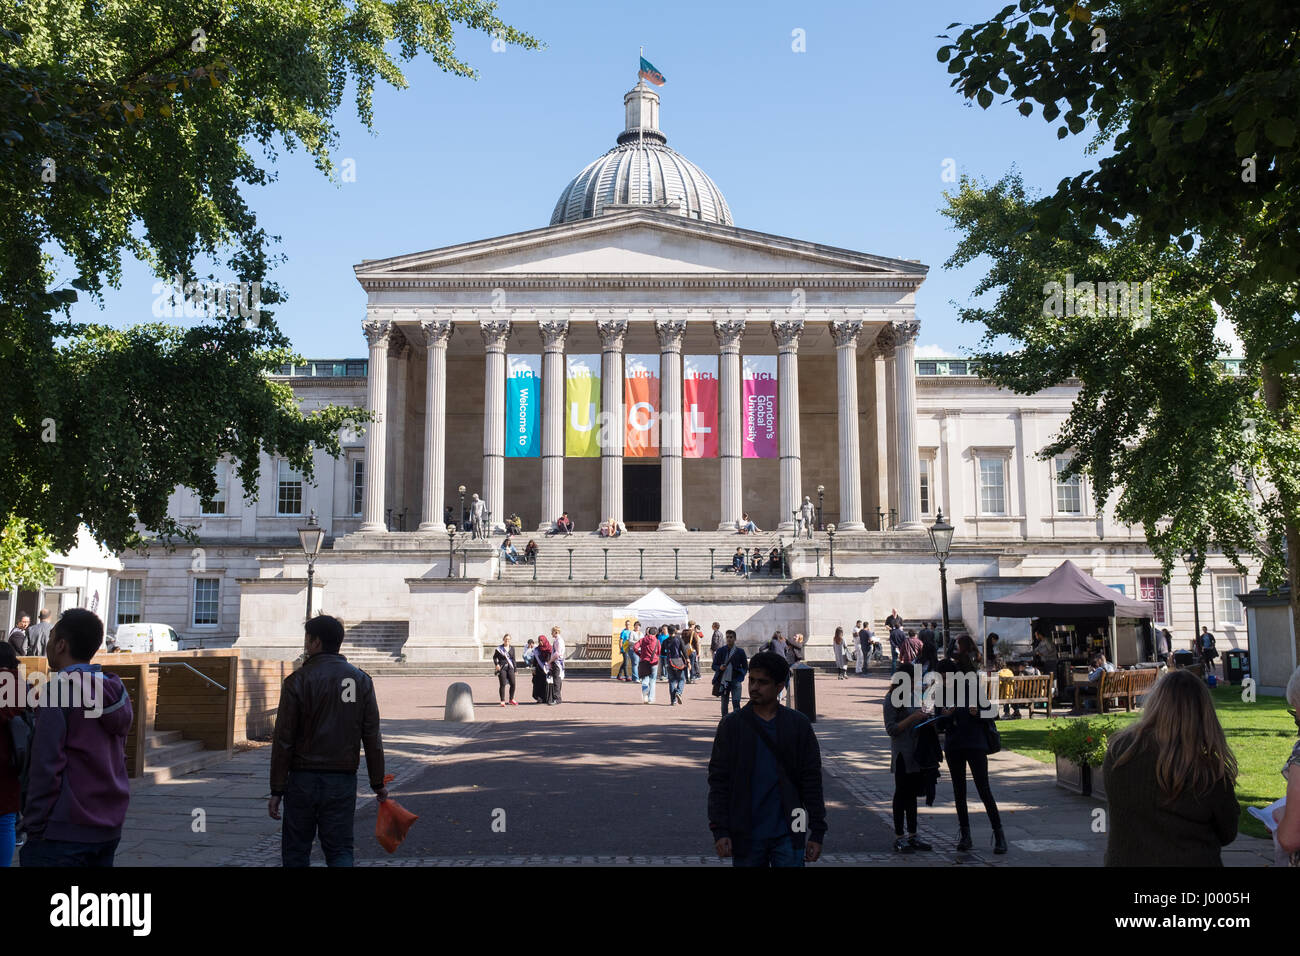 University College di Londra (UCL) è un ente pubblico di ricerca Università di Londra, Inghilterra, e un costituente college dell Università Federale di Londra. Esso Foto Stock